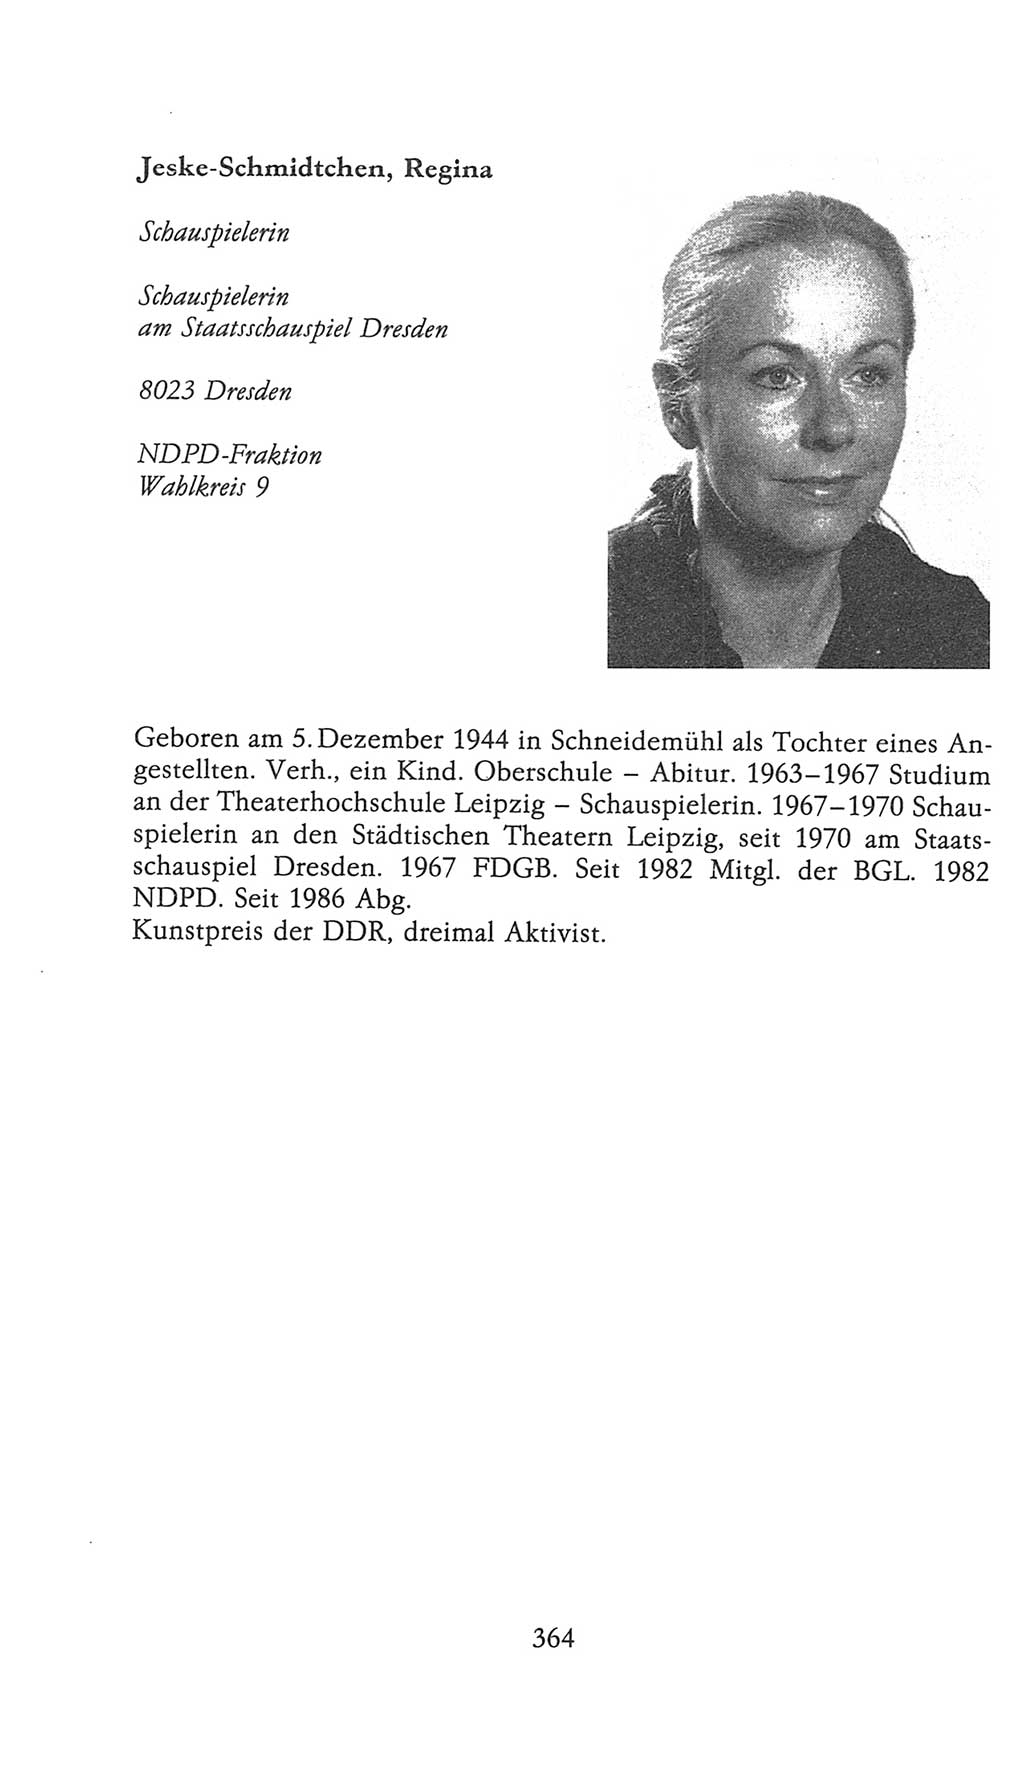 Volkskammer (VK) der Deutschen Demokratischen Republik (DDR), 9. Wahlperiode 1986-1990, Seite 364 (VK. DDR 9. WP. 1986-1990, S. 364)